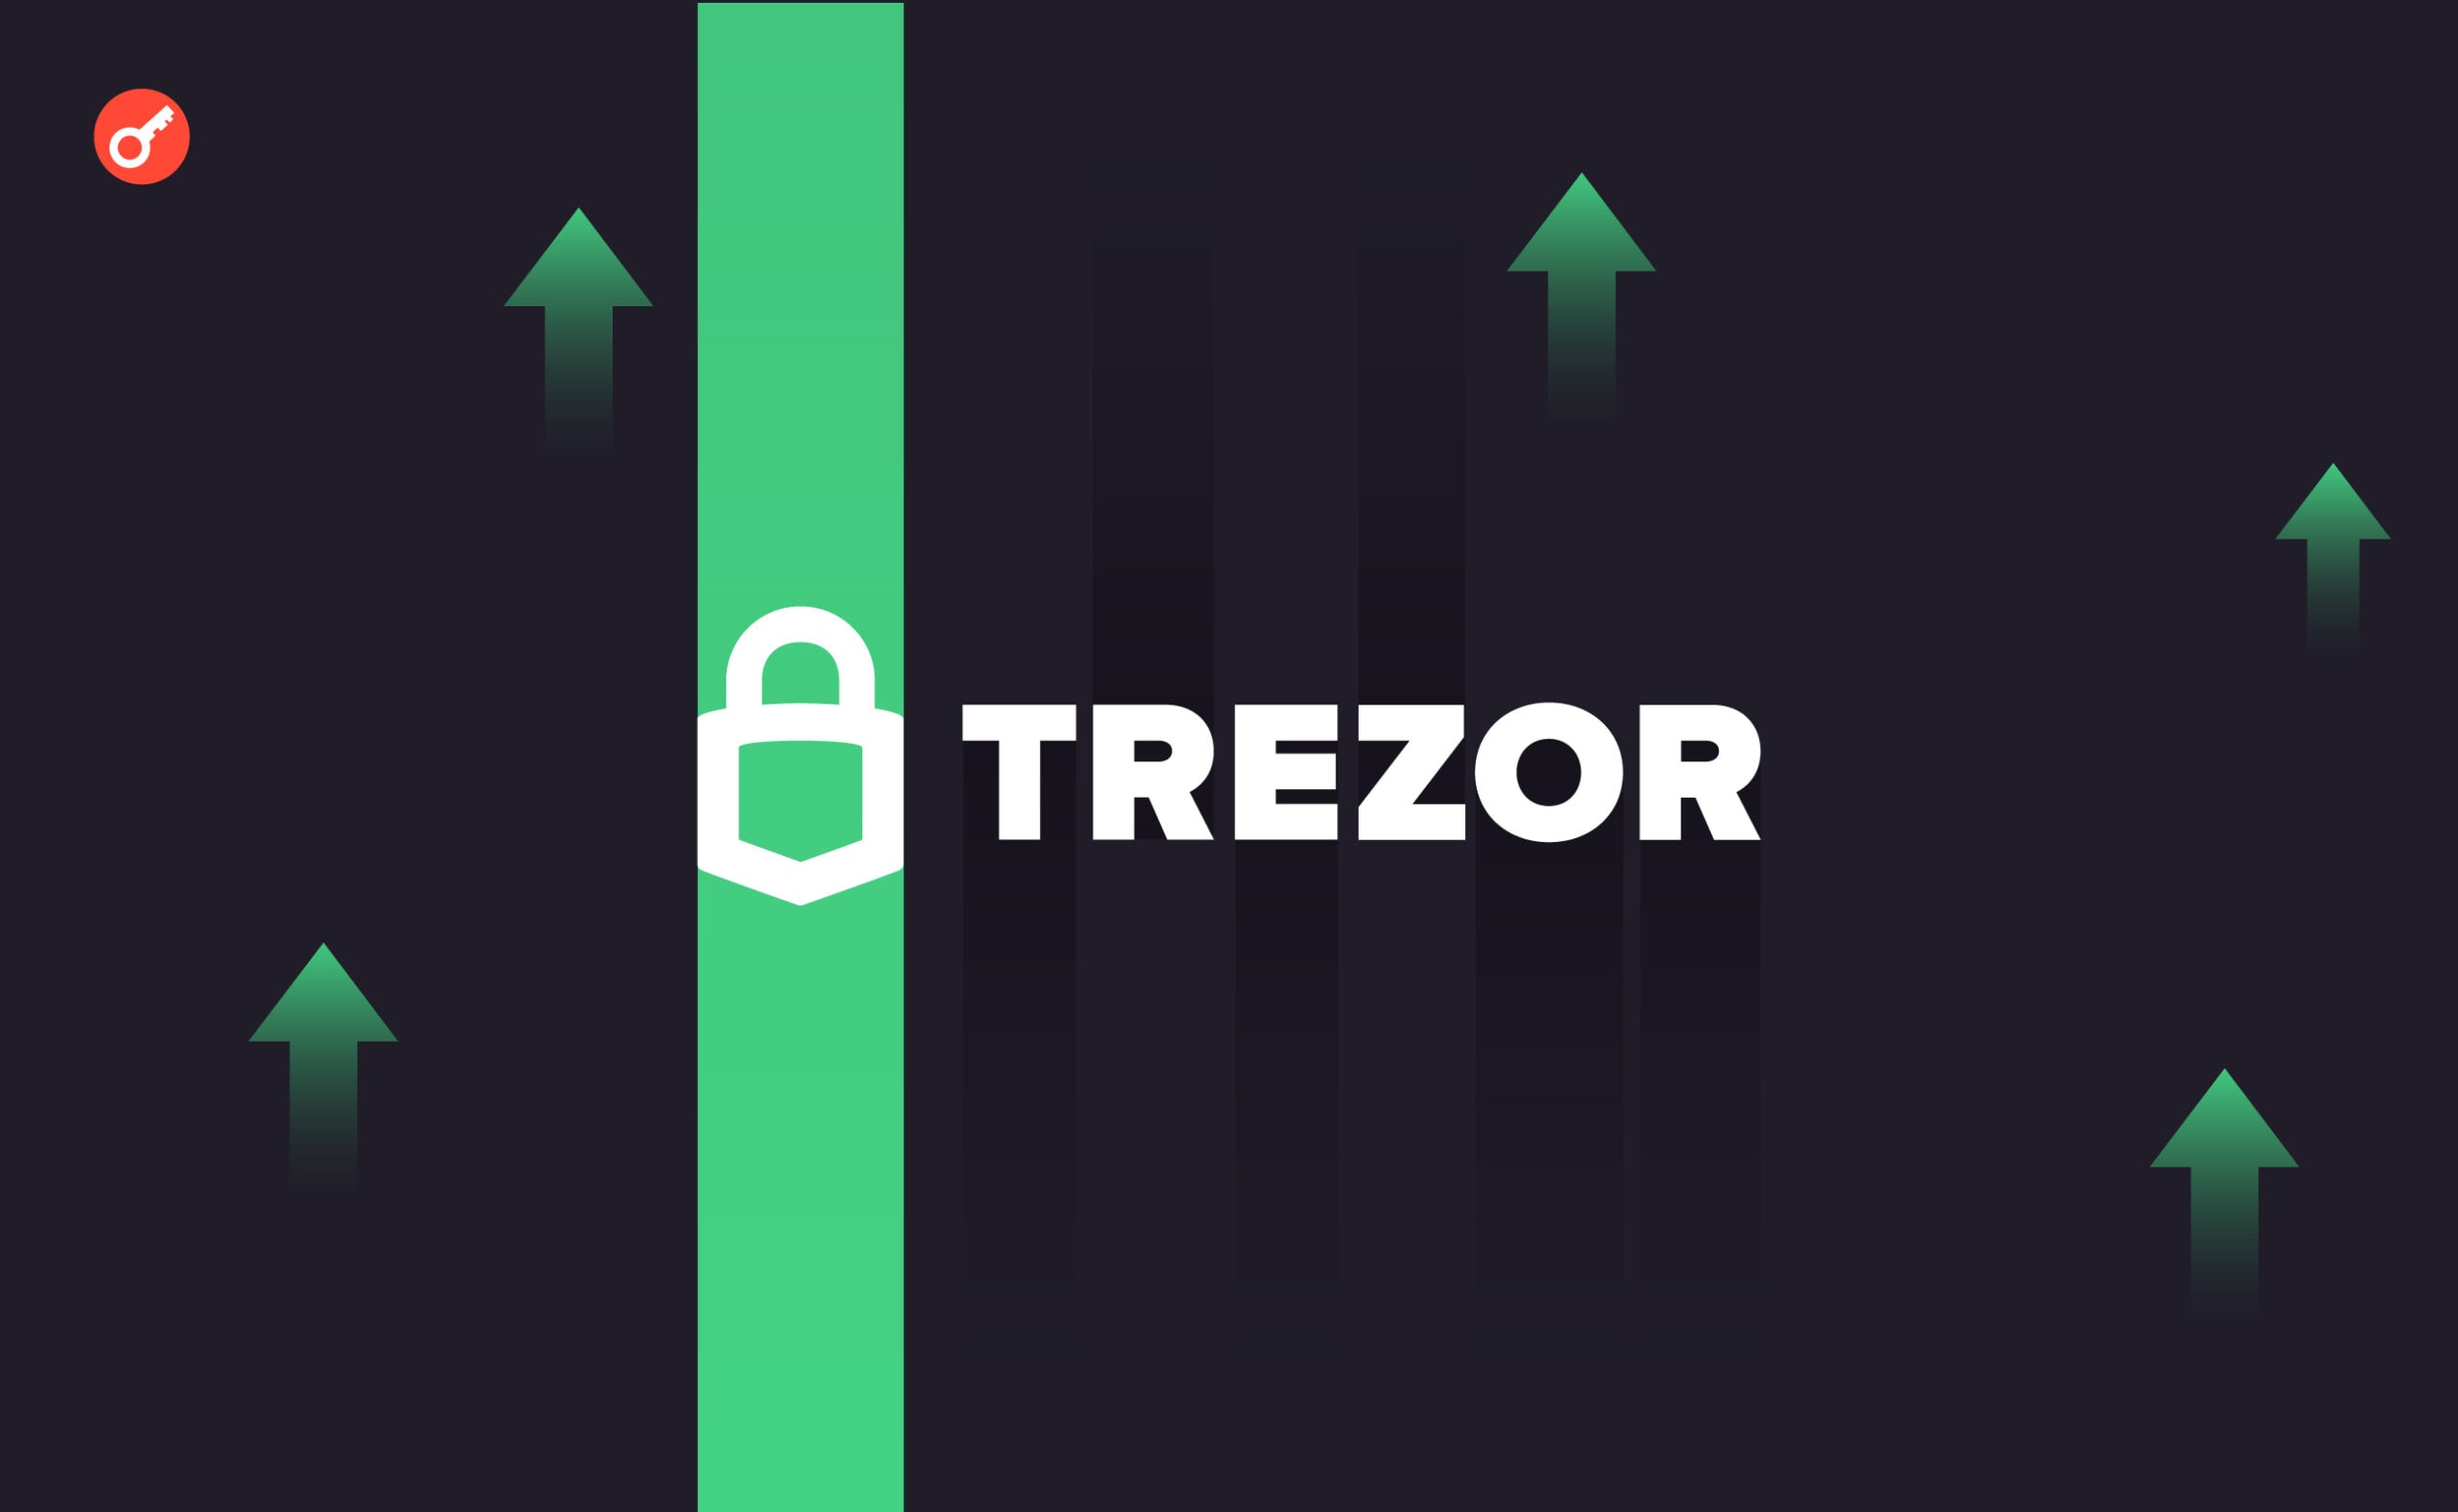 Sprzedaż Trezora wzrosła o 900% w związku ze skandalem Ledger. Główny kolaż wiadomości.